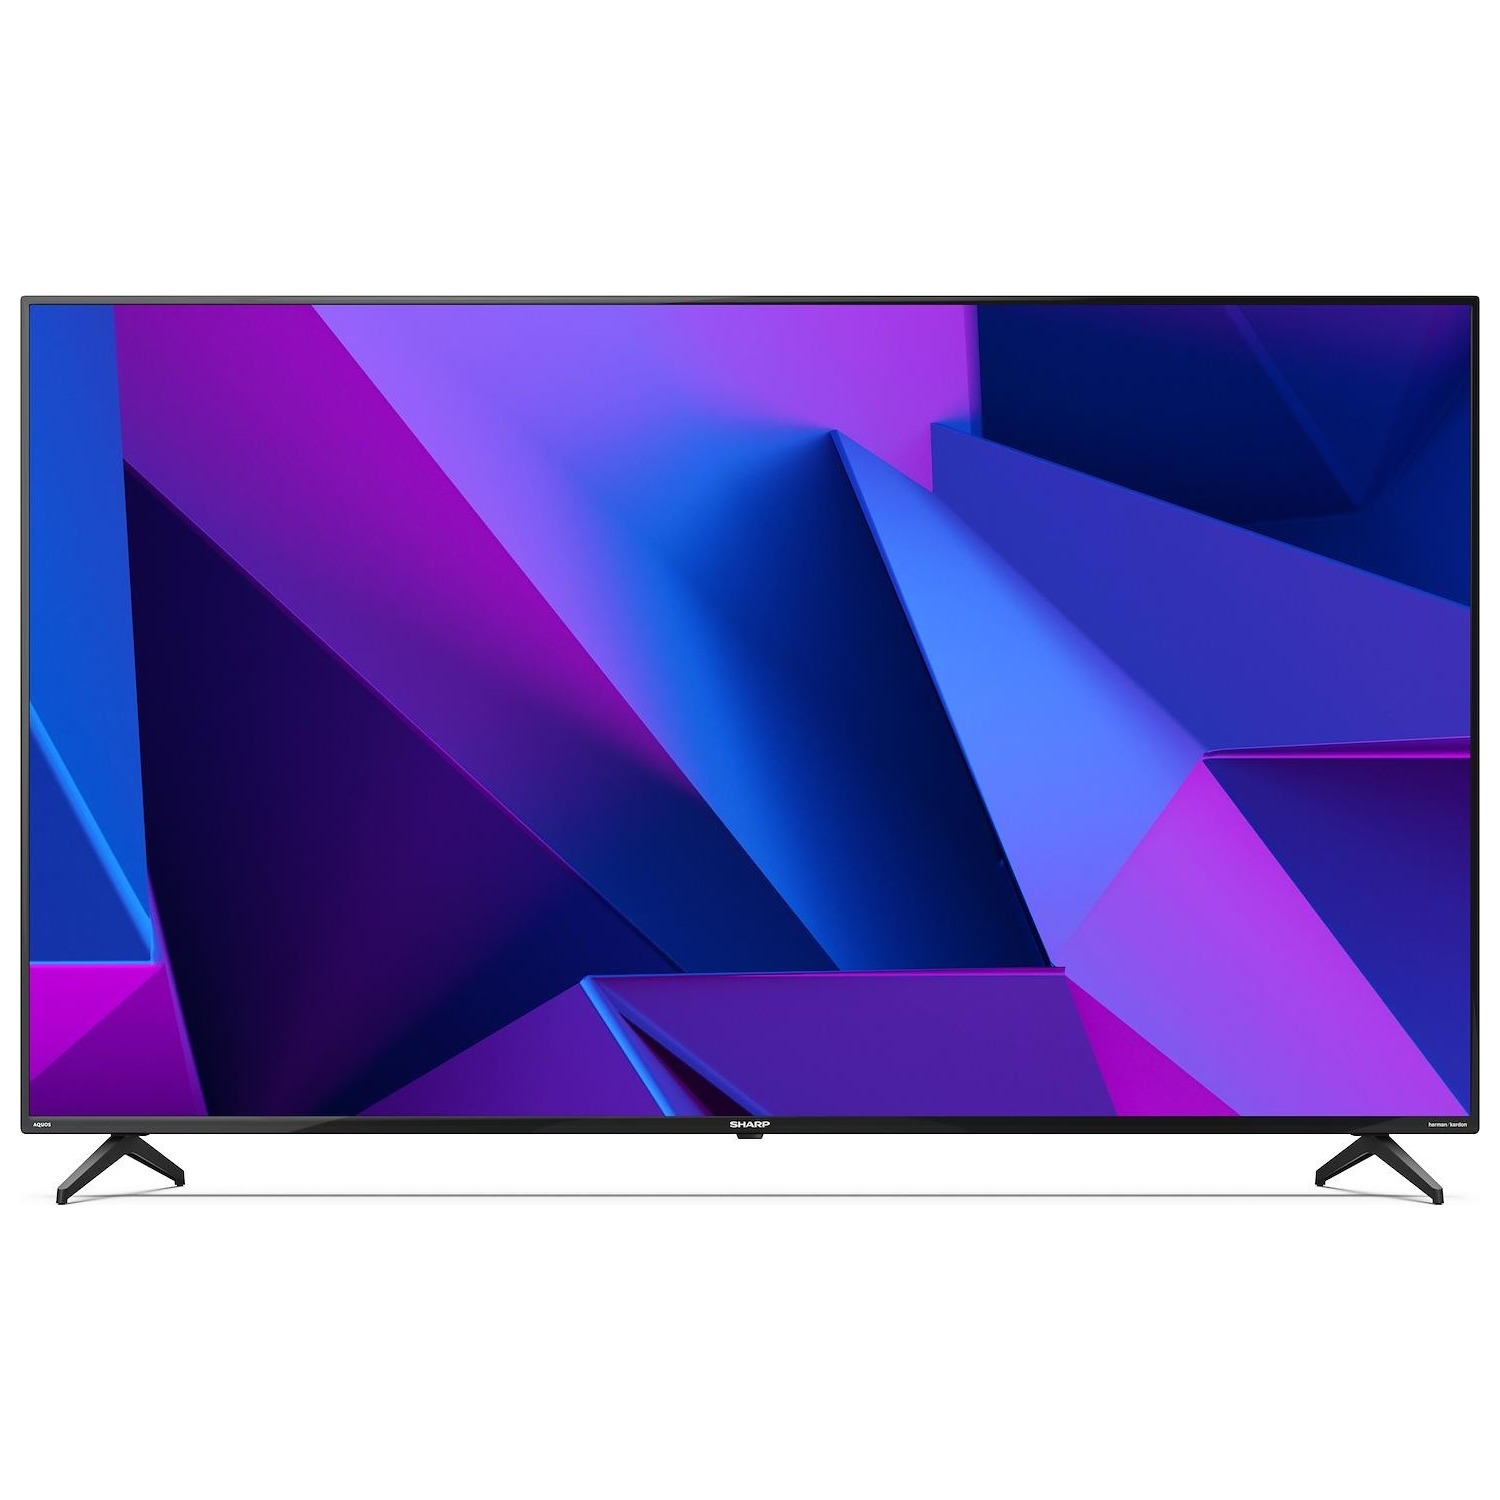 Immagine per TV LED Sharp 70FN2EA Calibrato Smart 4K e FULL HD da DIMOStore